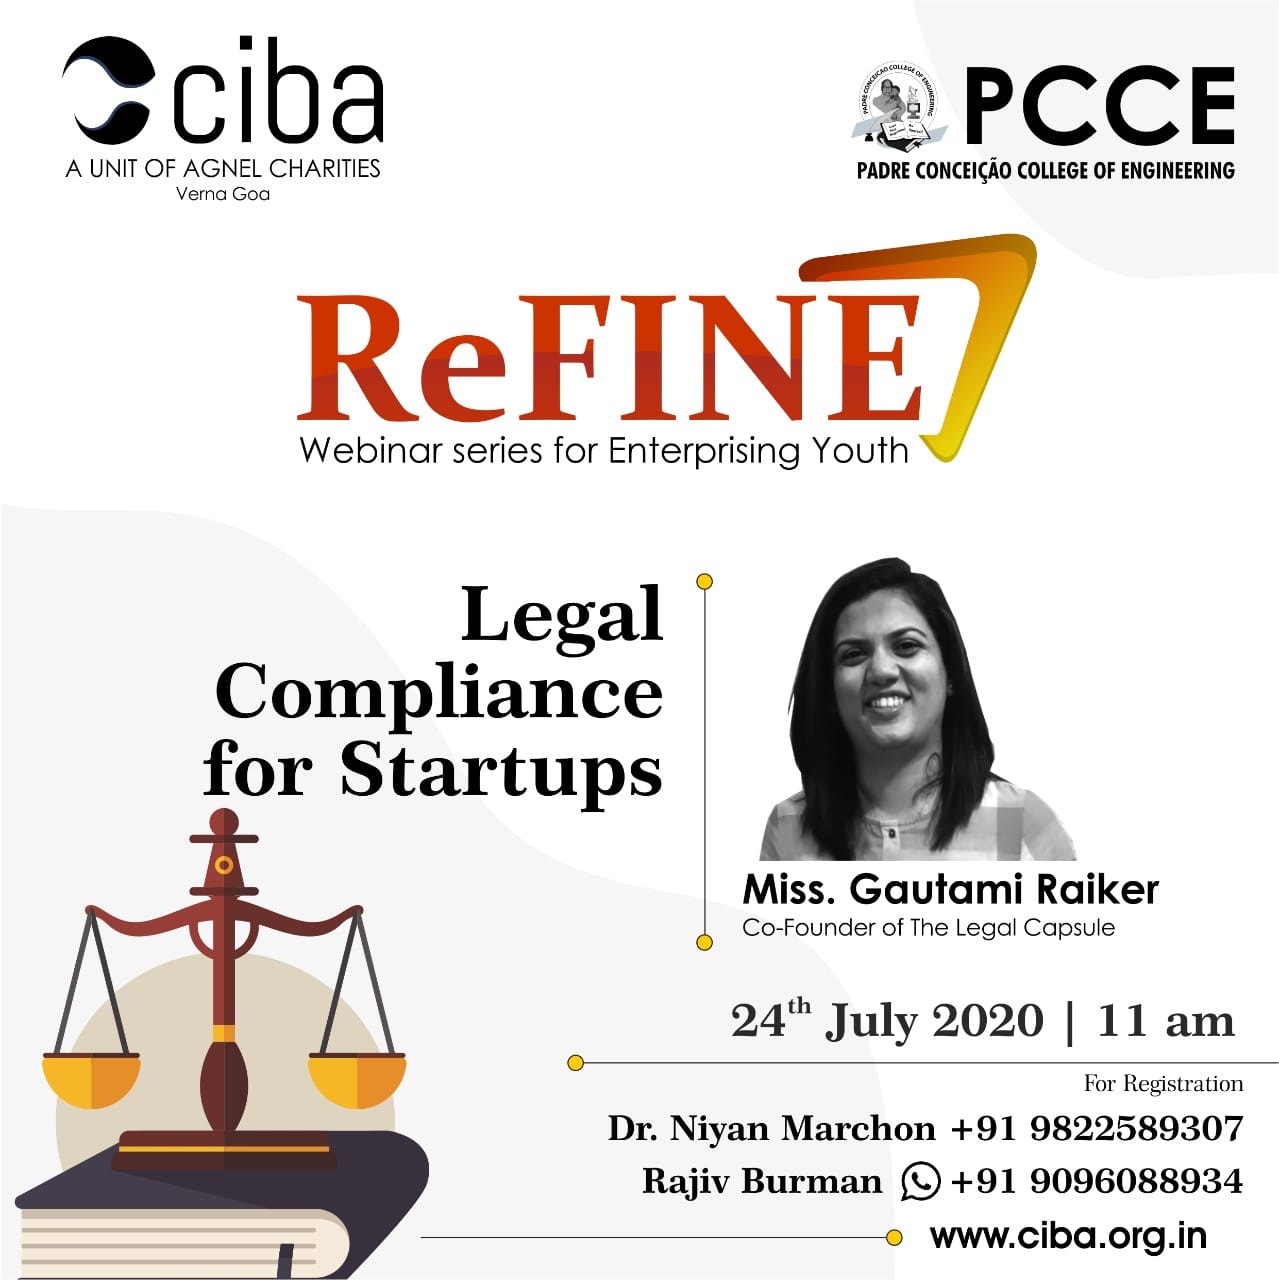 ciba-ReFINE - Legal Compliance for Startups